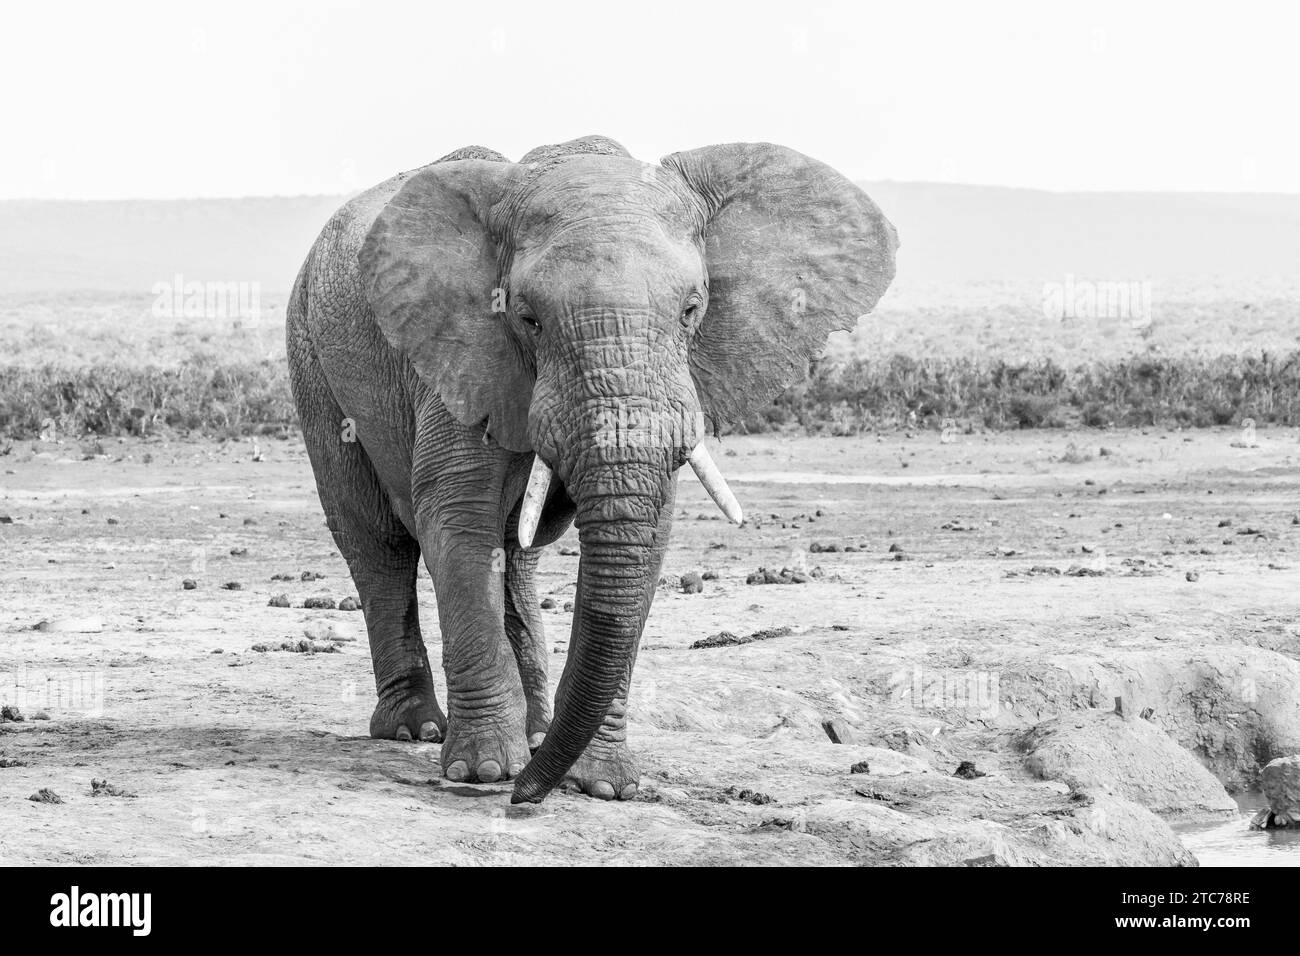 Portrait en noir et blanc d'un éléphant d'Afrique (Loxodonta africana) Addo Elephant National Park, Eastern Cape, Afrique du Sud Banque D'Images